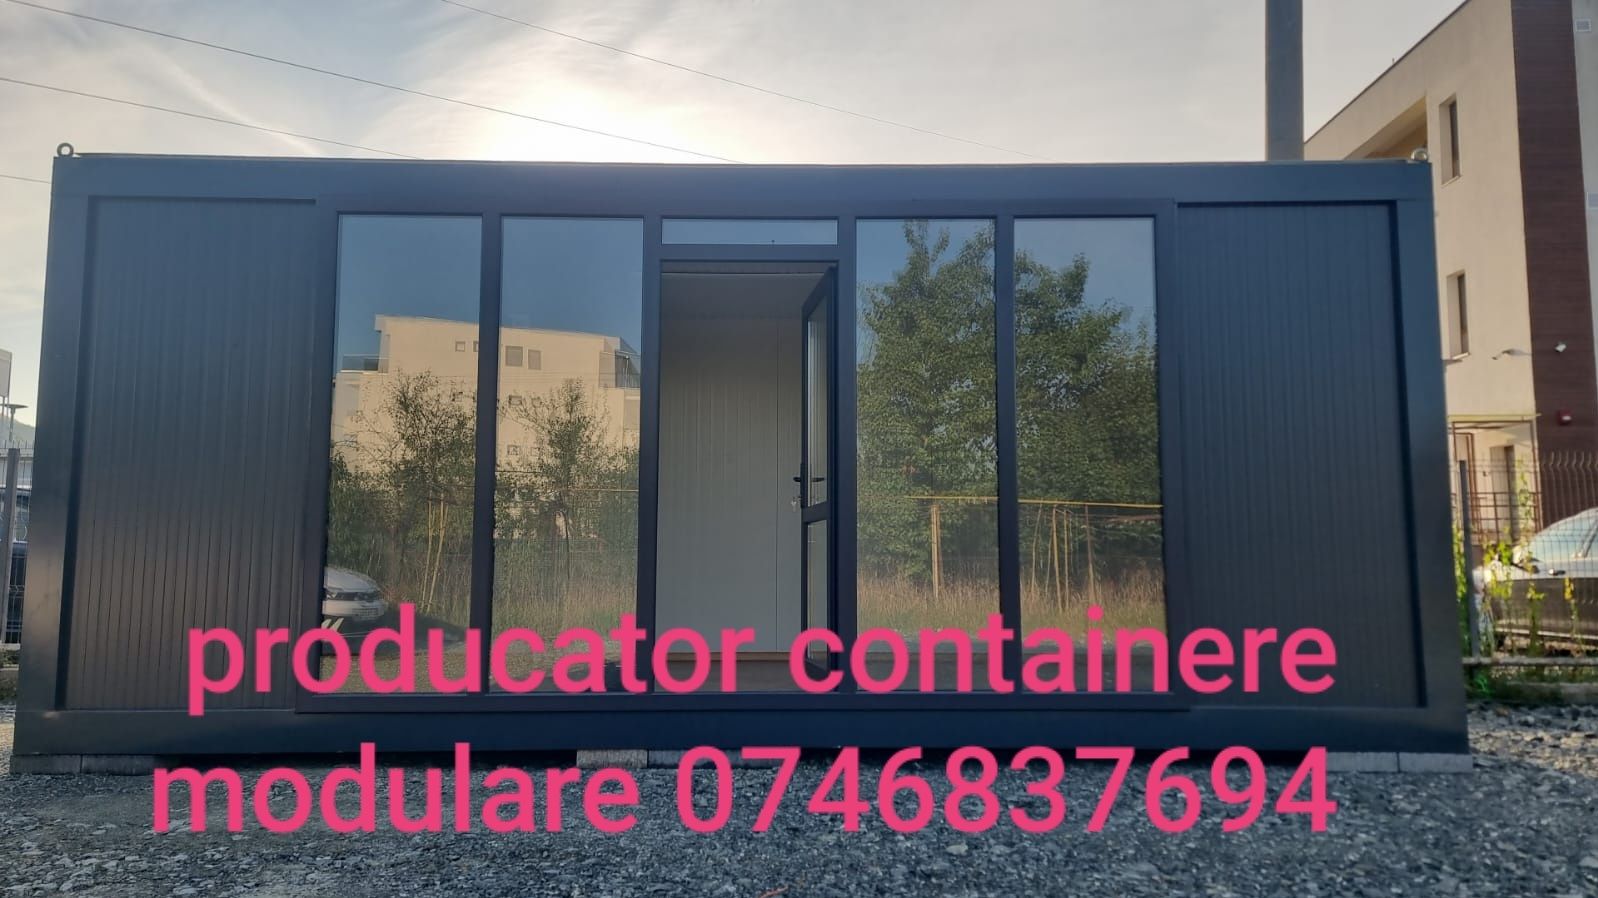 Vand container modular birou, grup sanitar,  comercial cu vitrina